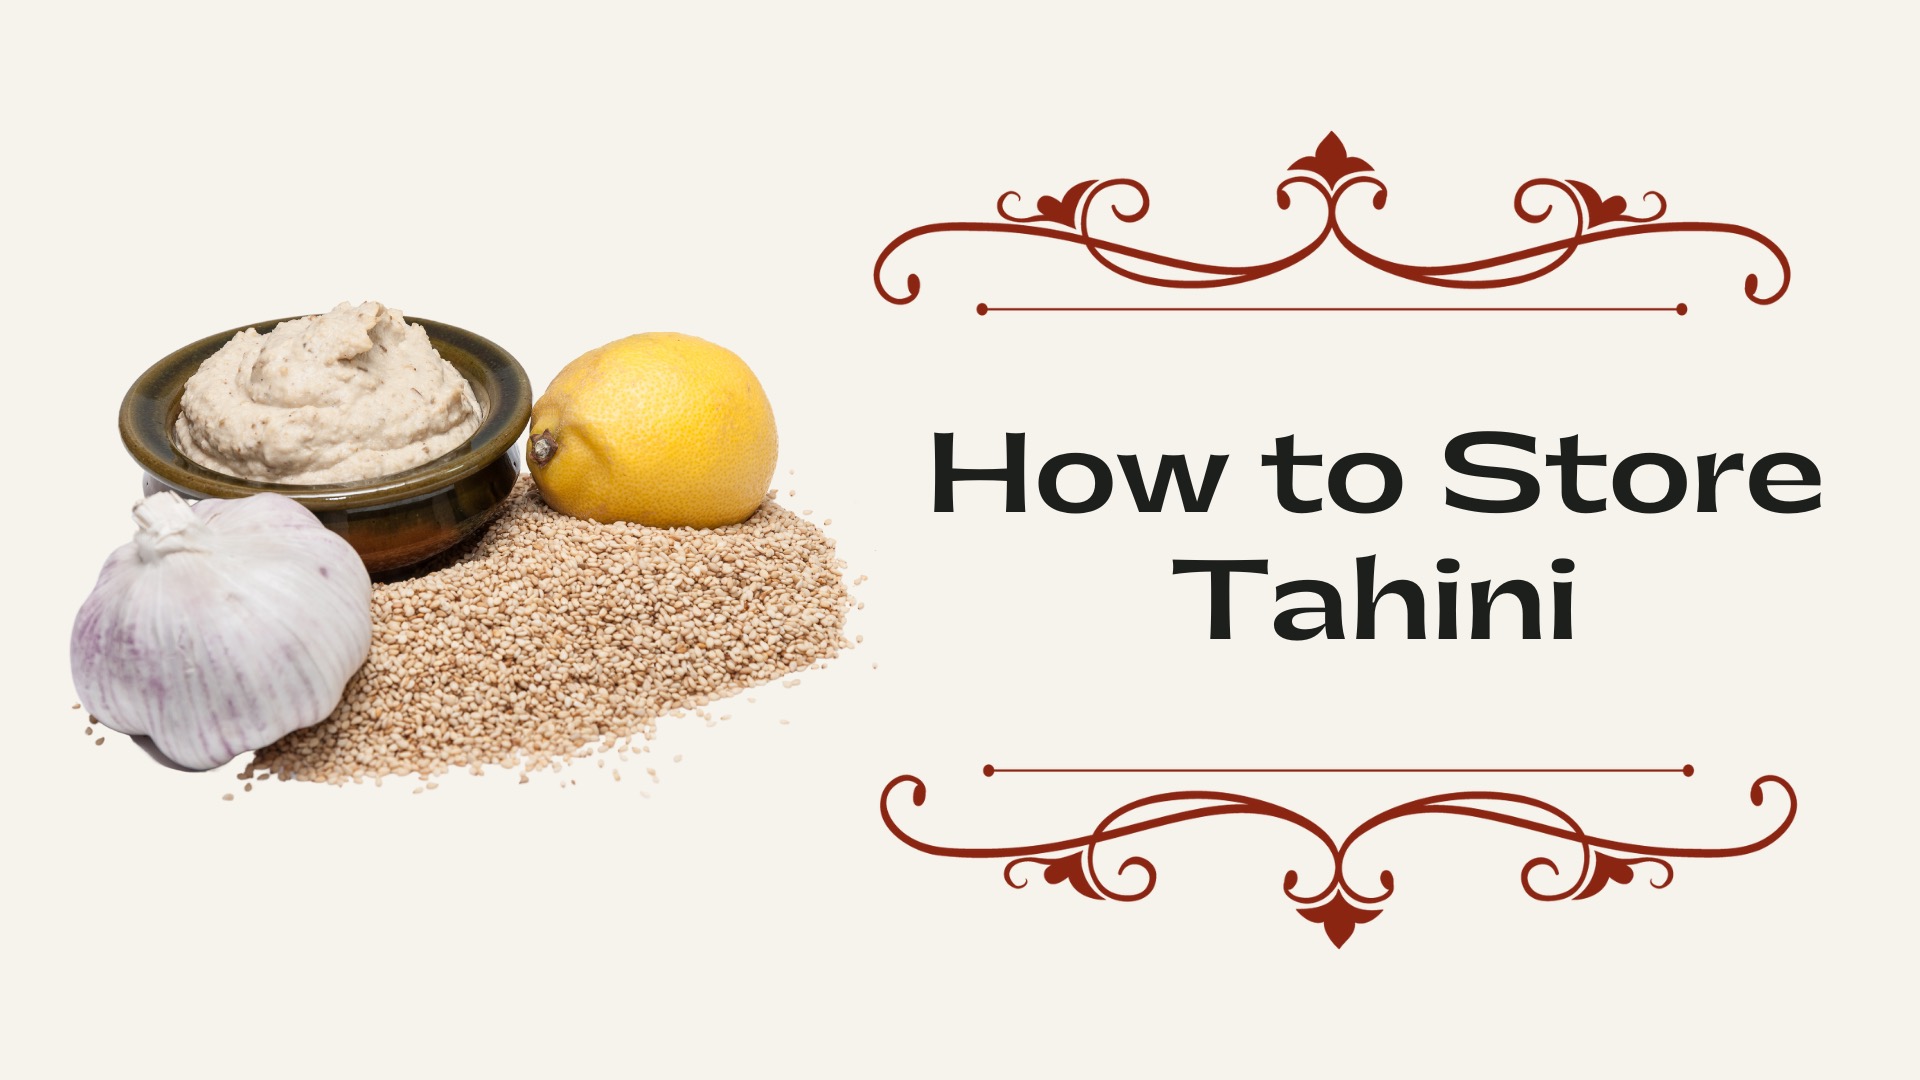 How to Store Tahini